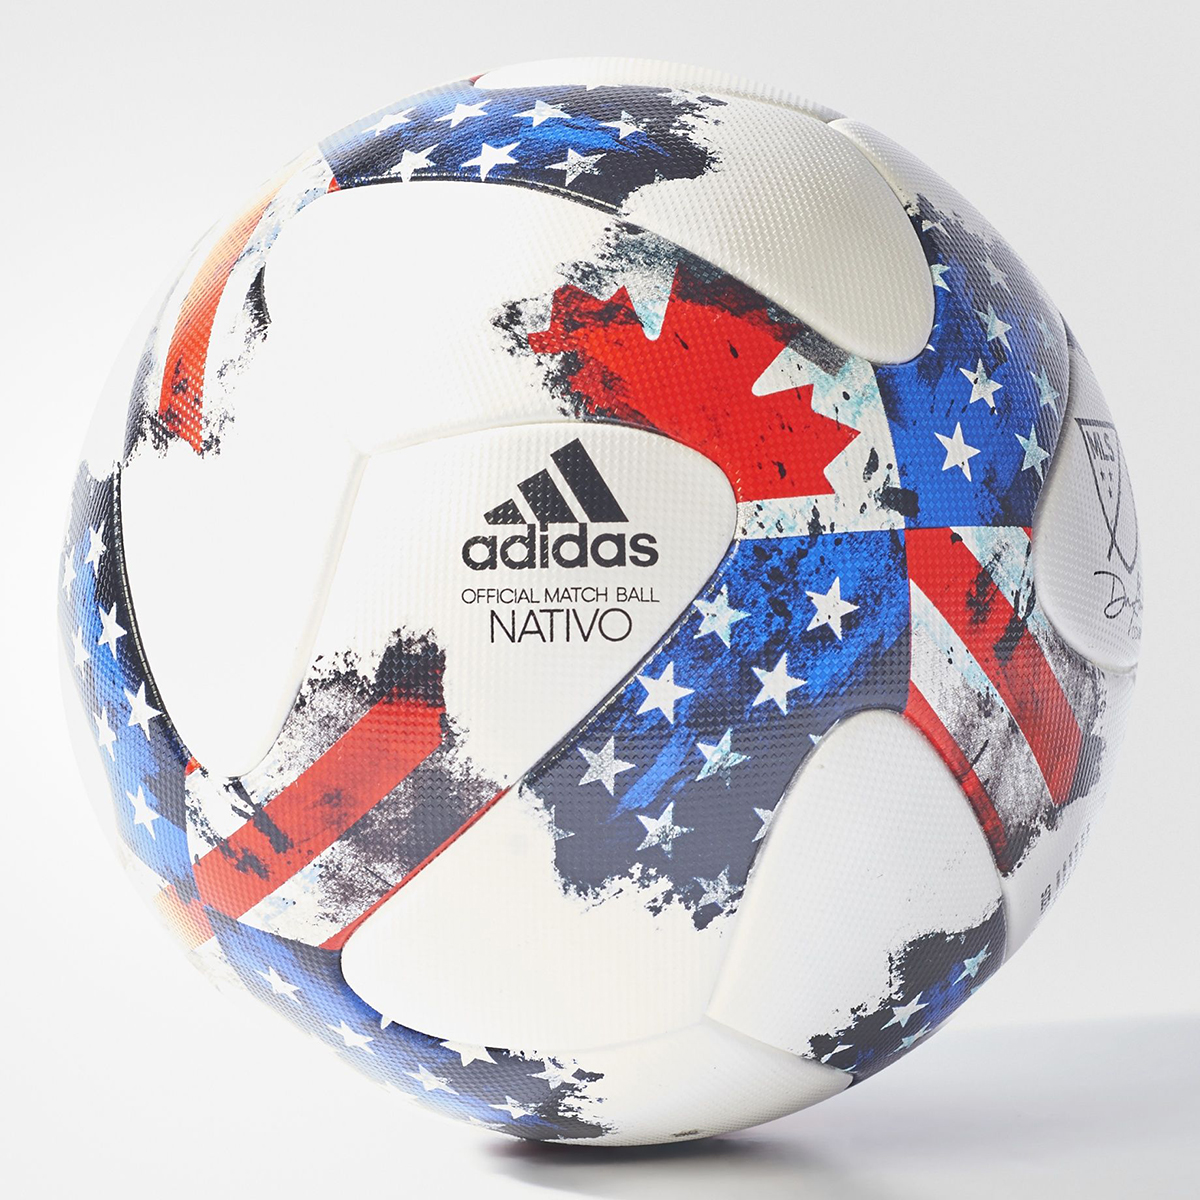 Nuevo balón adidas Nativo MLS 2017 - Marca de Gol